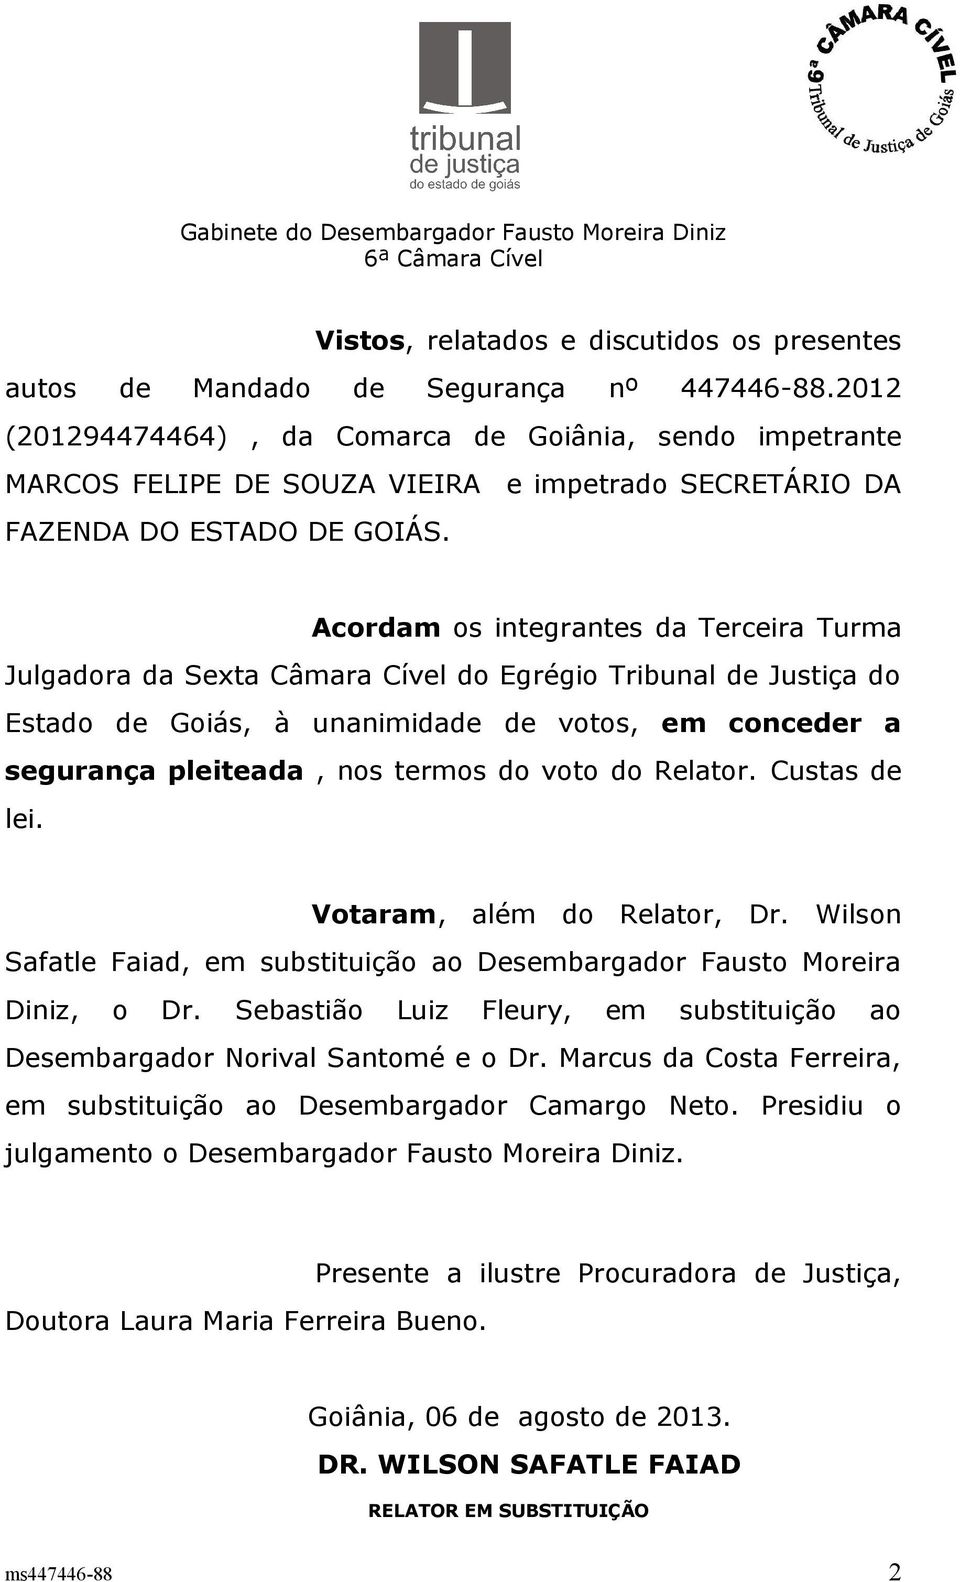 Acordam os integrantes da Terceira Turma Julgadora da Sexta Câmara Cível do Egrégio Tribunal de Justiça do Estado de Goiás, à unanimidade de votos, em conceder a segurança pleiteada, nos termos do